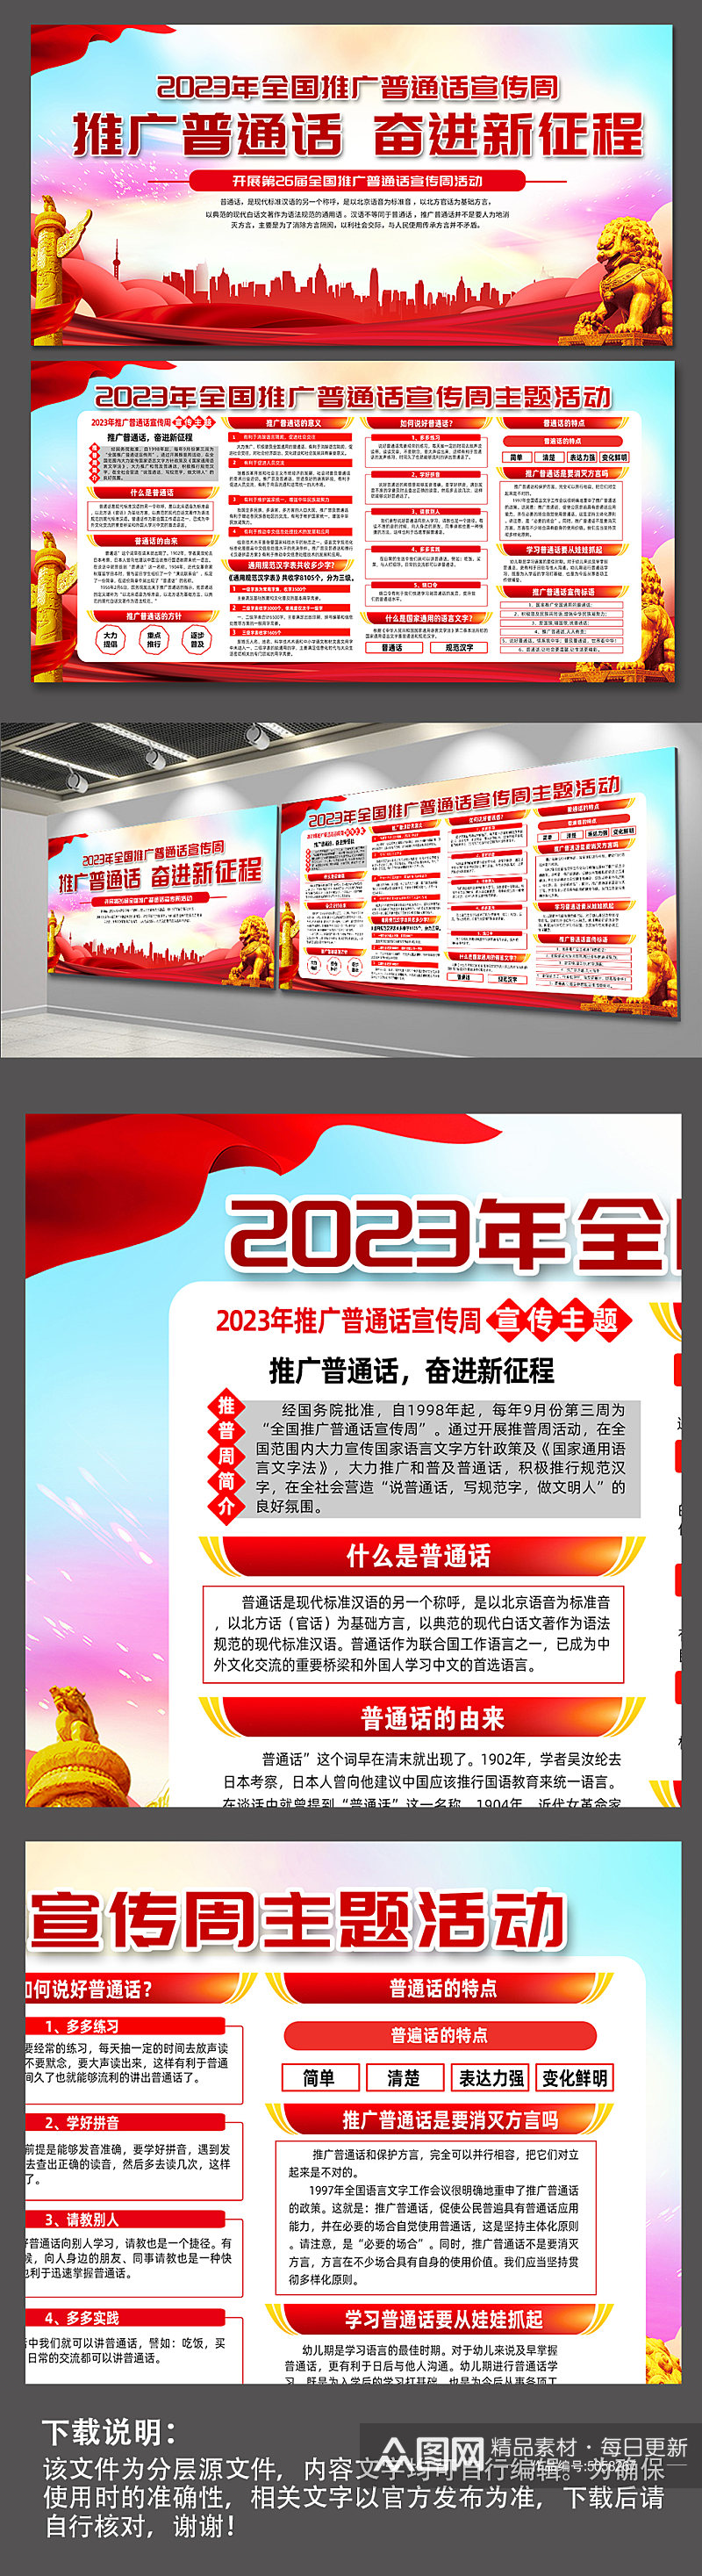 2023年全国推广普通话宣传周活动展板素材